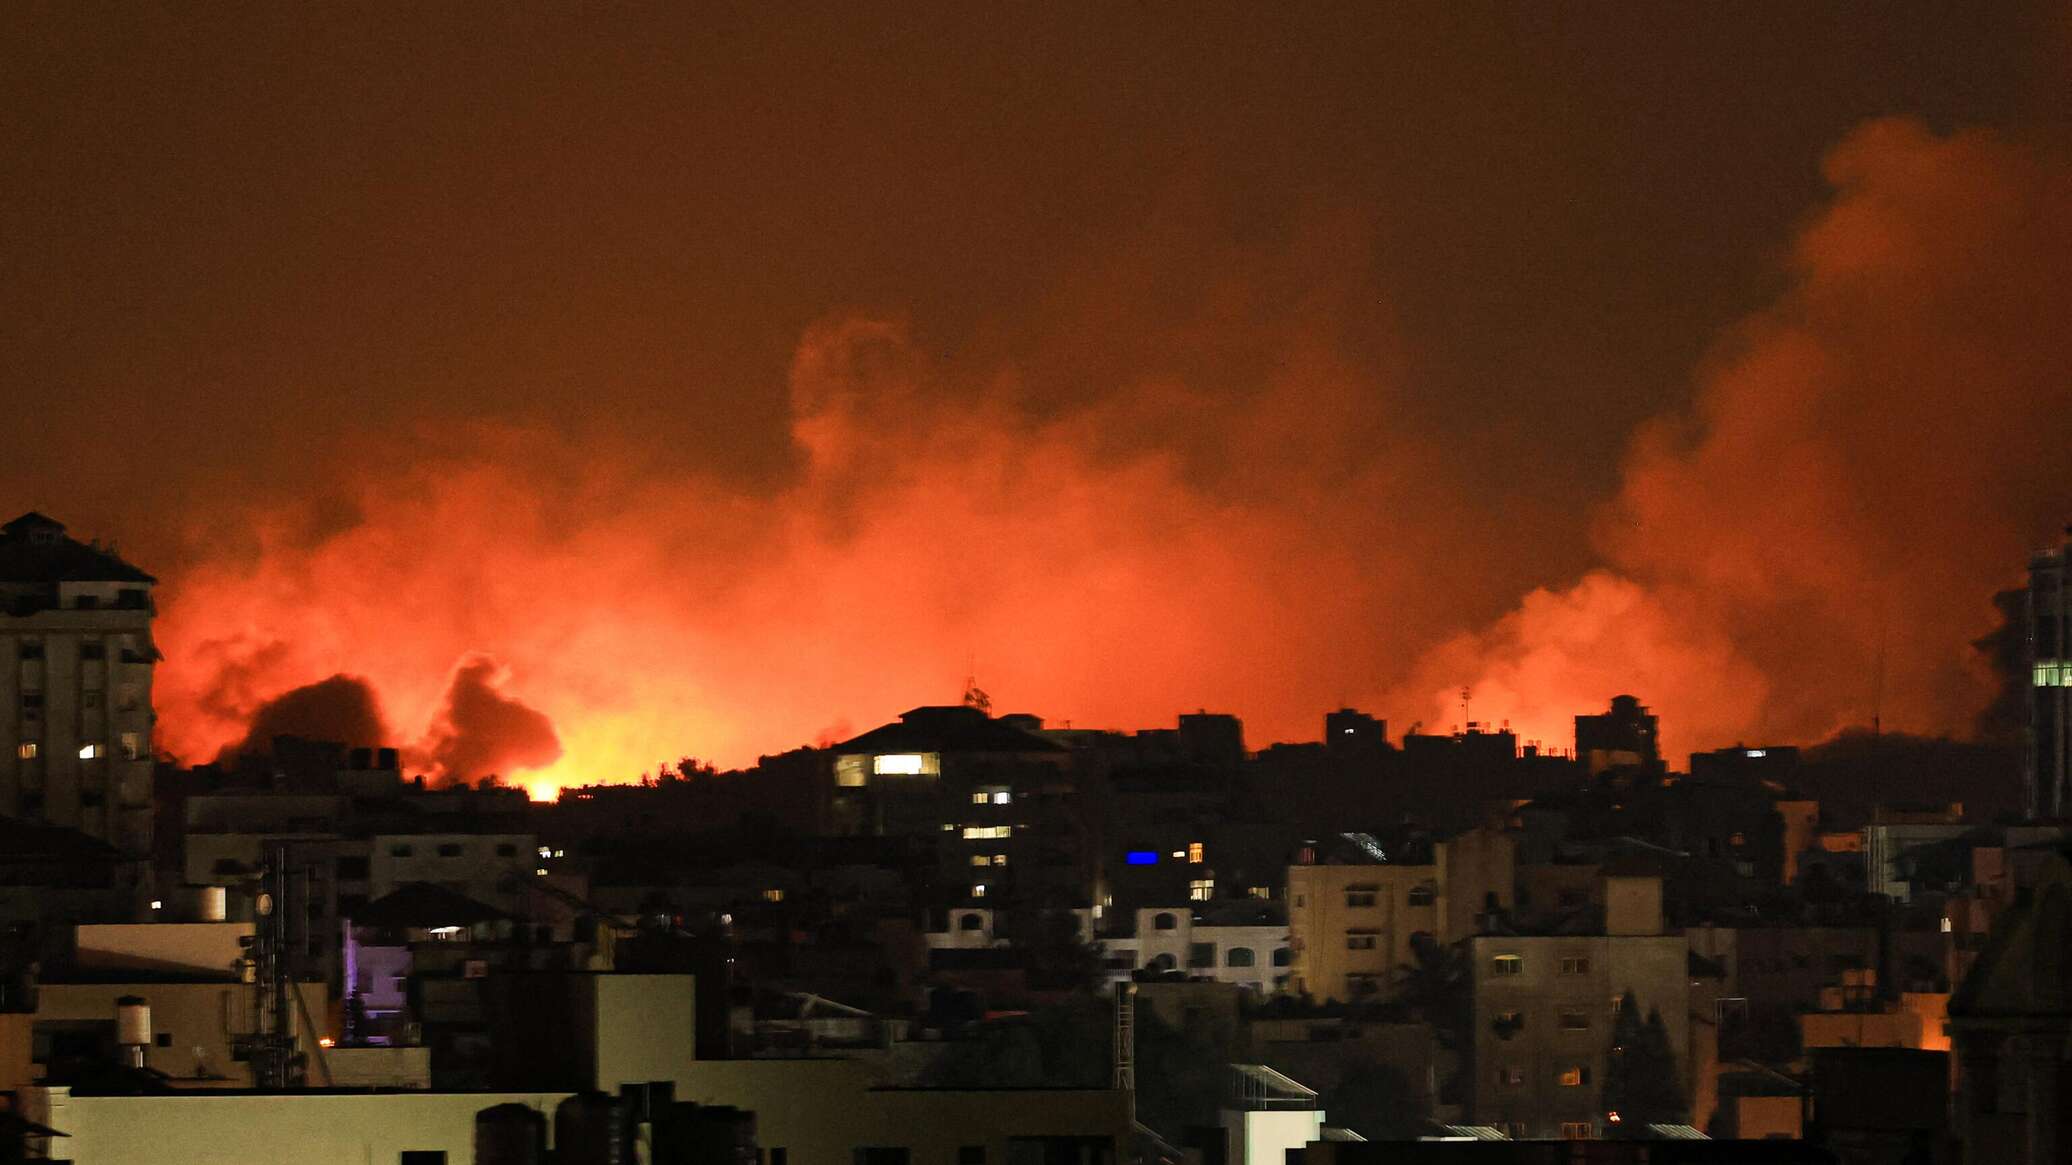 الأونروا لـ"سبوتنيك": قطاع غزة قد يصبح على شفا كارثة إنسانية بسبب التصعيد بين طرفي النزاع